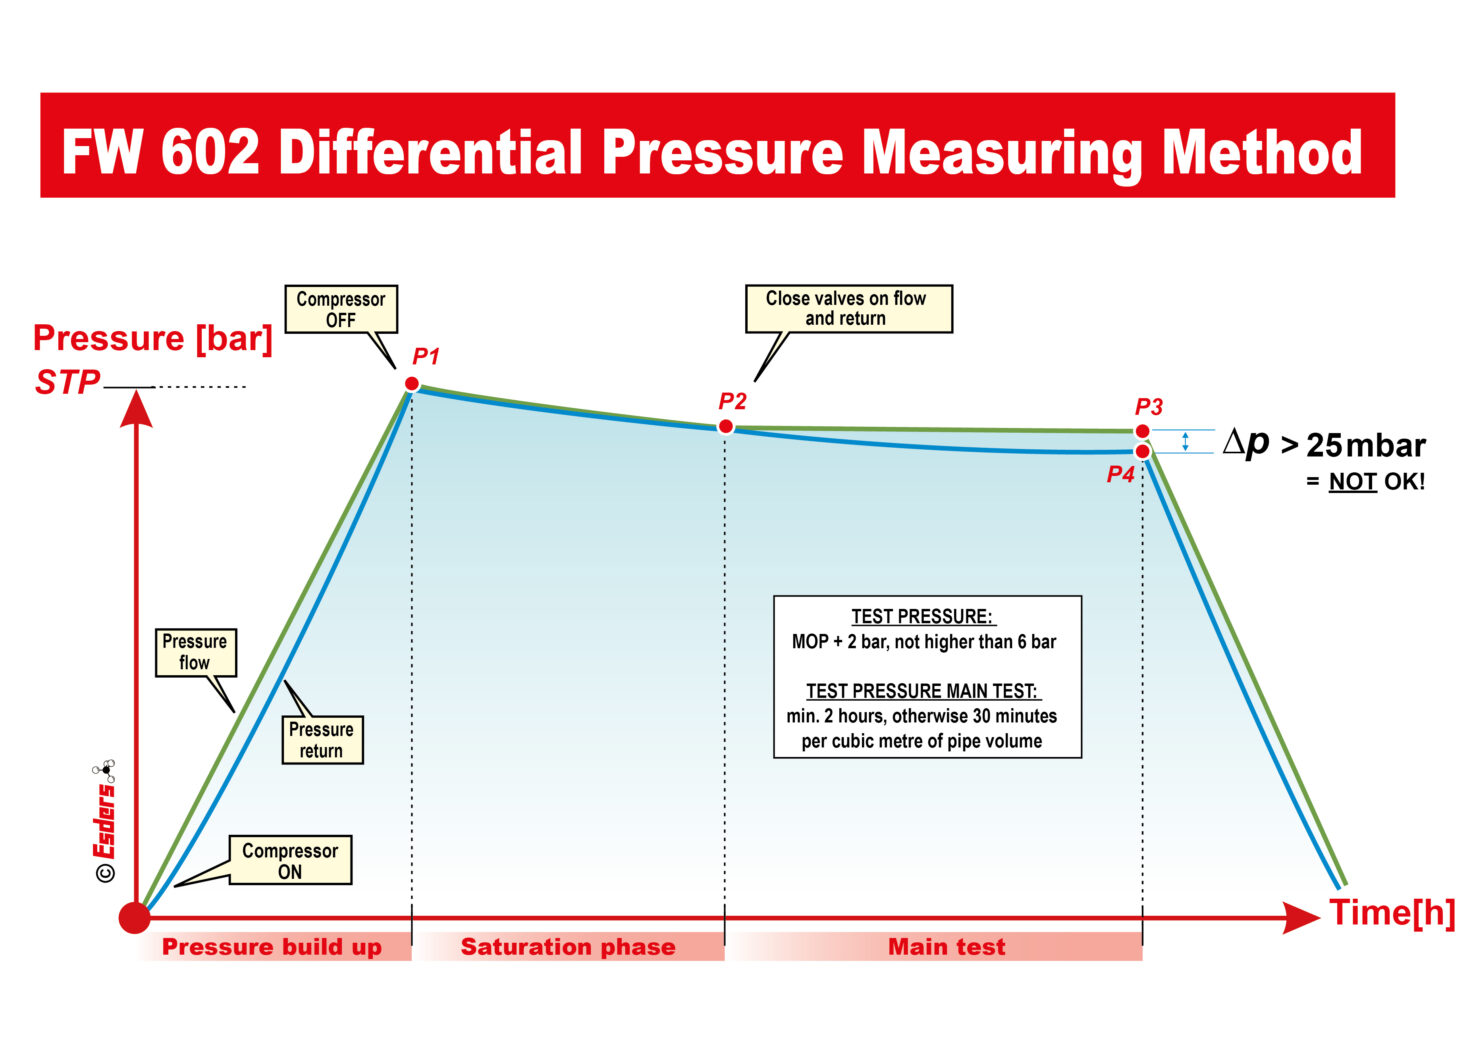 FW-602 Differential pressure measurement method